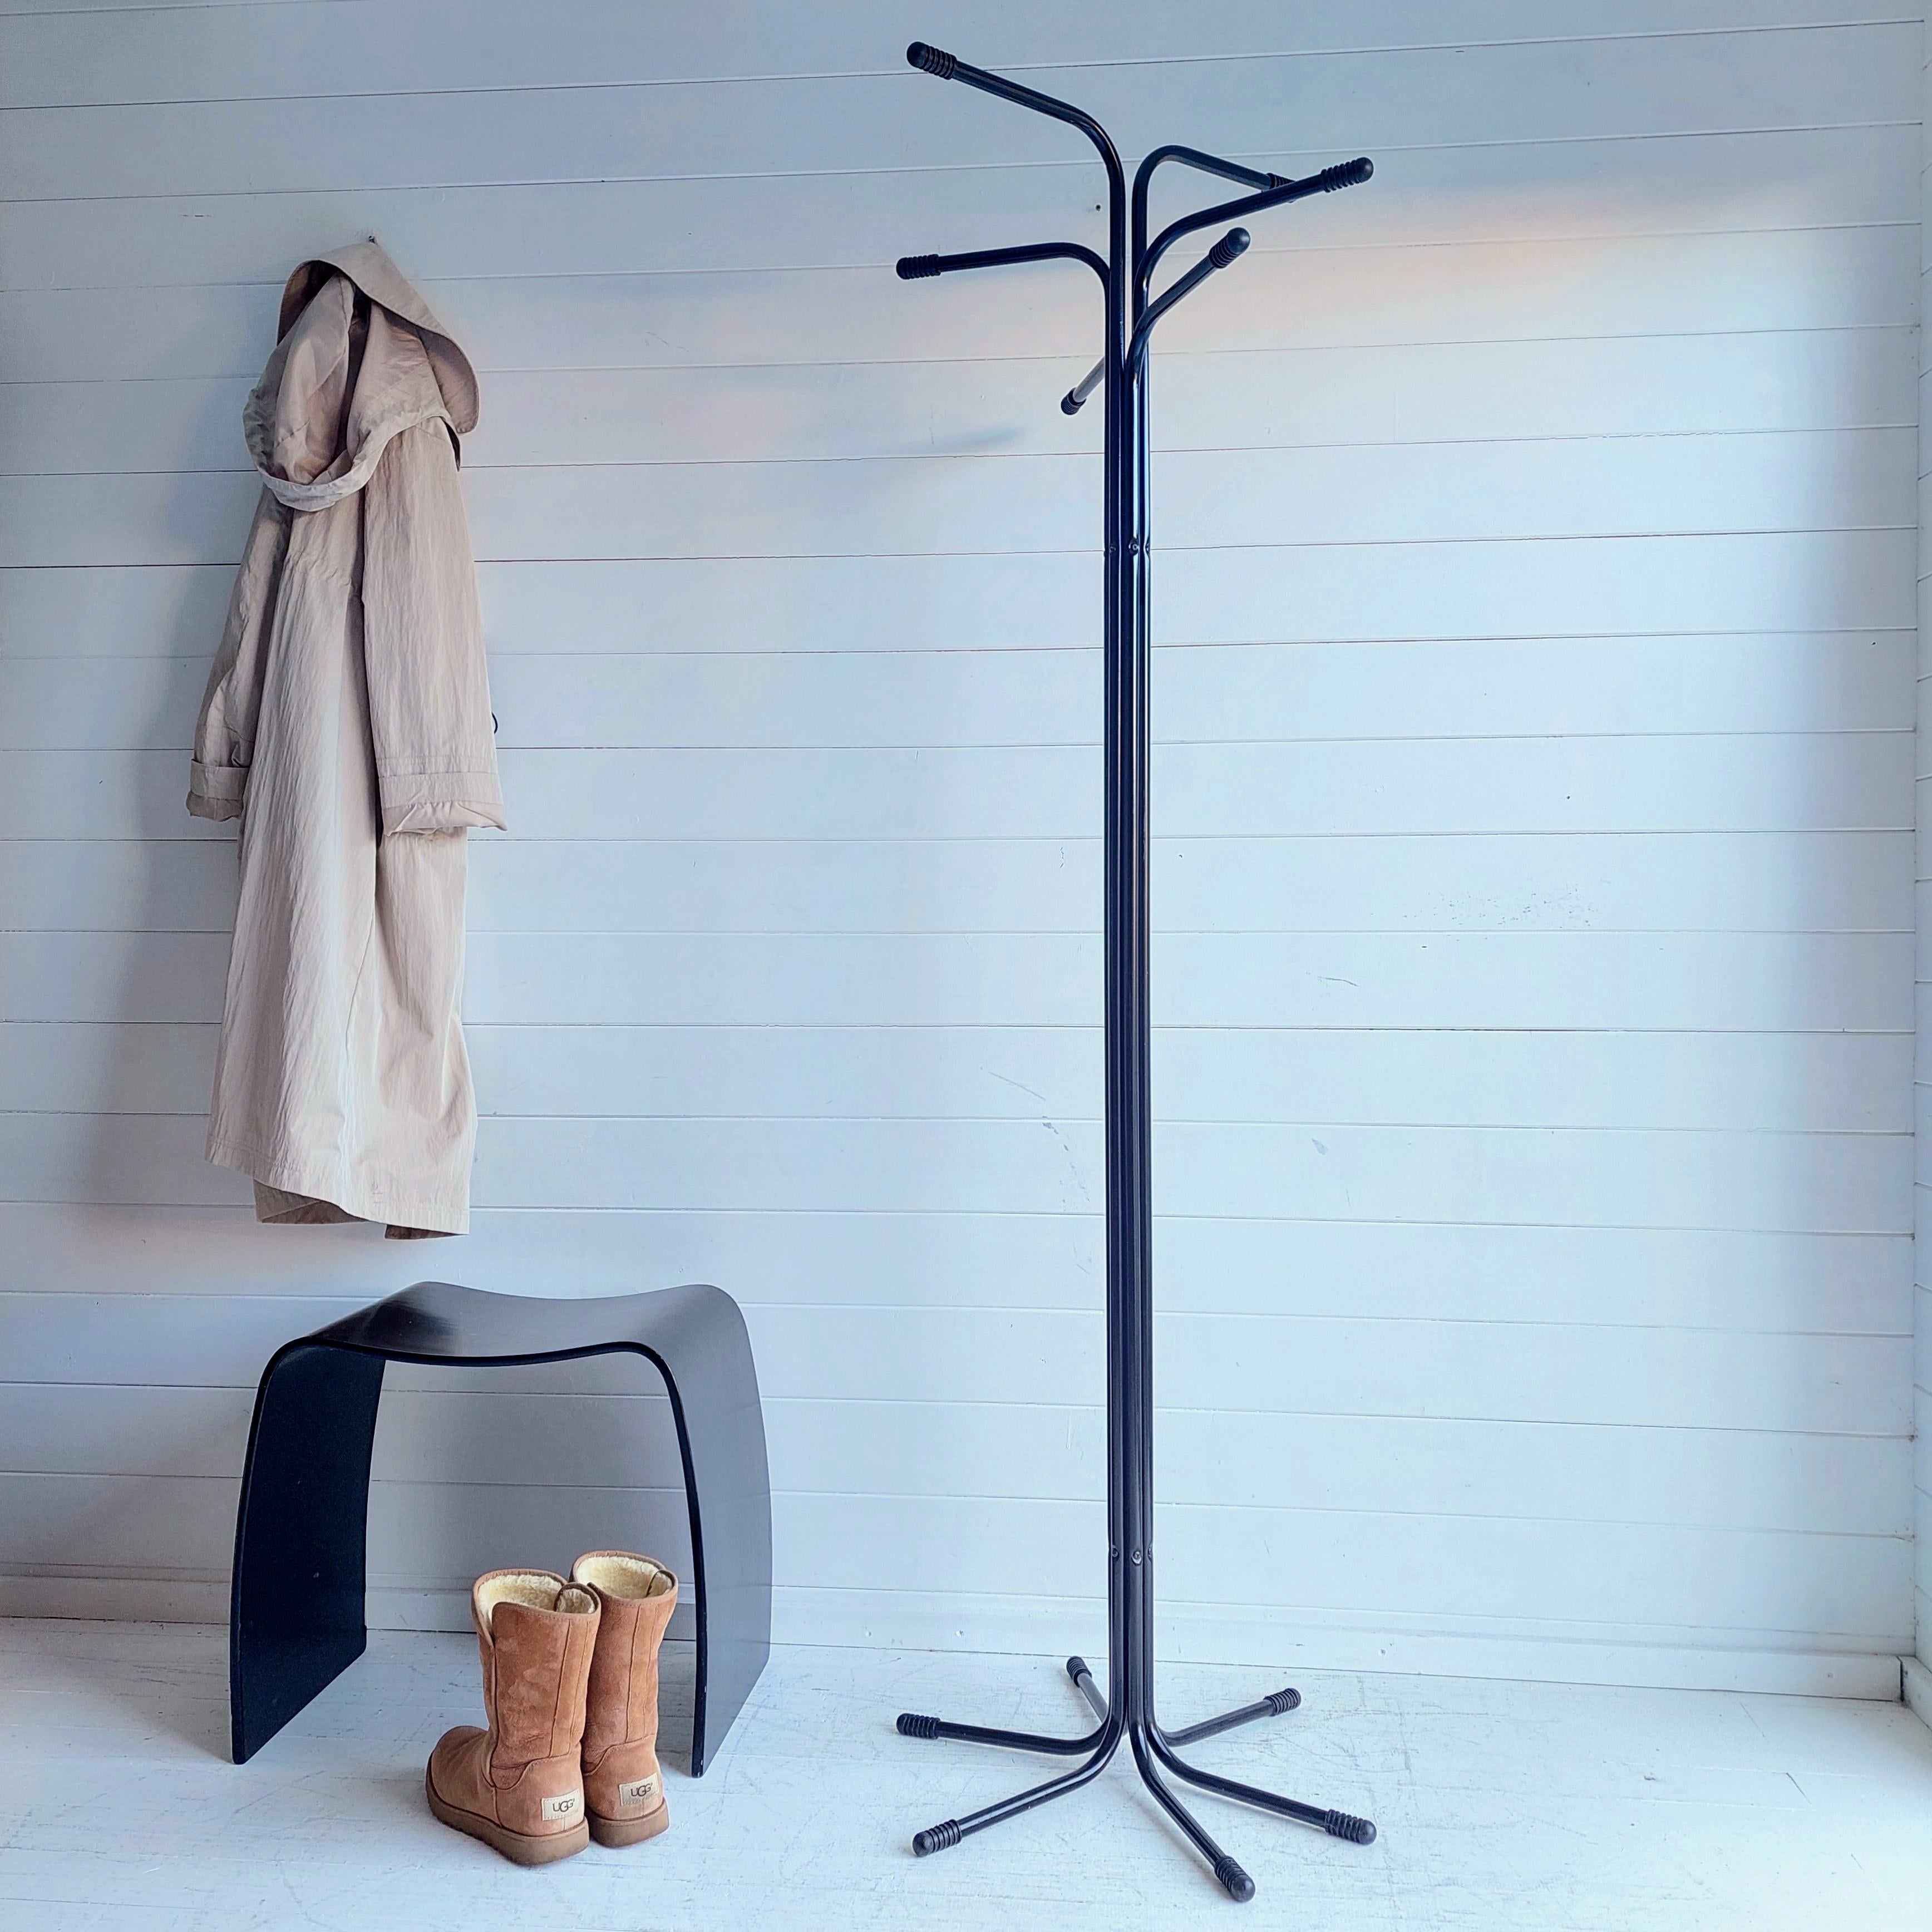 Seltener Fund!
Seltener Plagg-Garderobenständer von Tord Bjorklund für Ikea.
Garderobenständer aus Metall, bestehend aus sechs schwarz lackierten Eisenrohren mit schwarzen Kunststoffspitzen.
Emblematisches Stück aus den 80er Jahren von einem